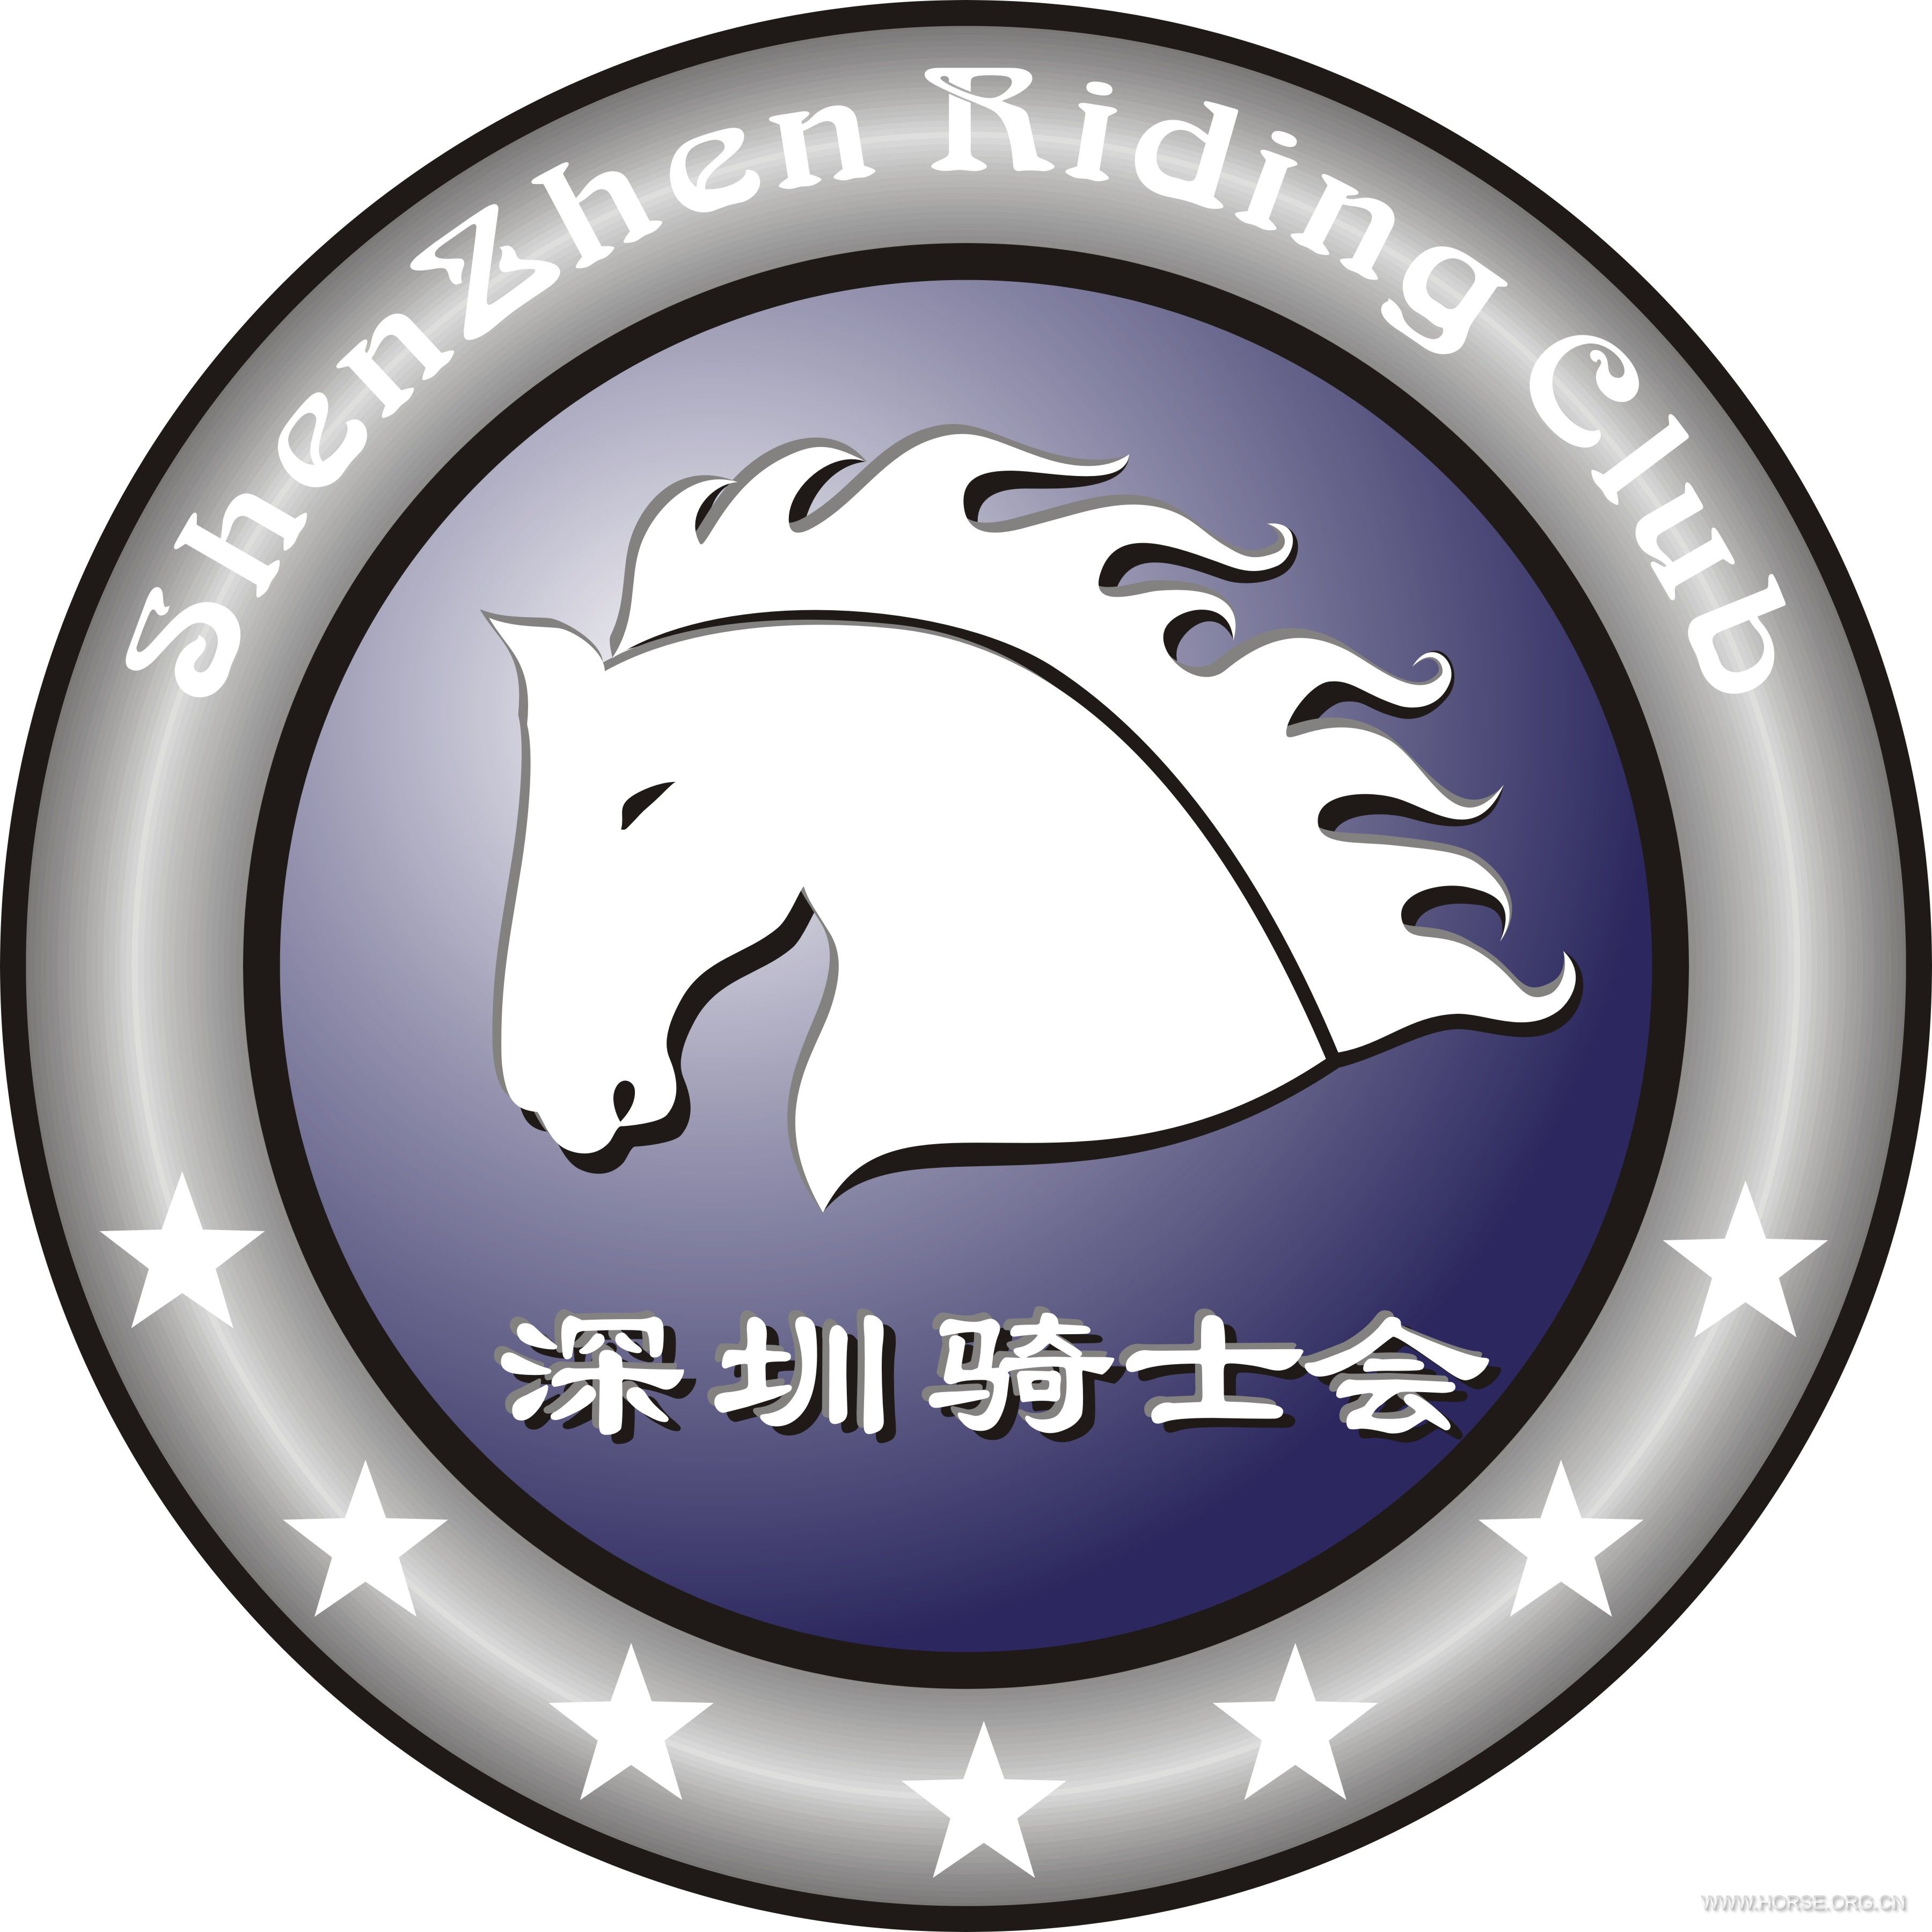 深圳骑士会logo终稿--20111214-3.jpg